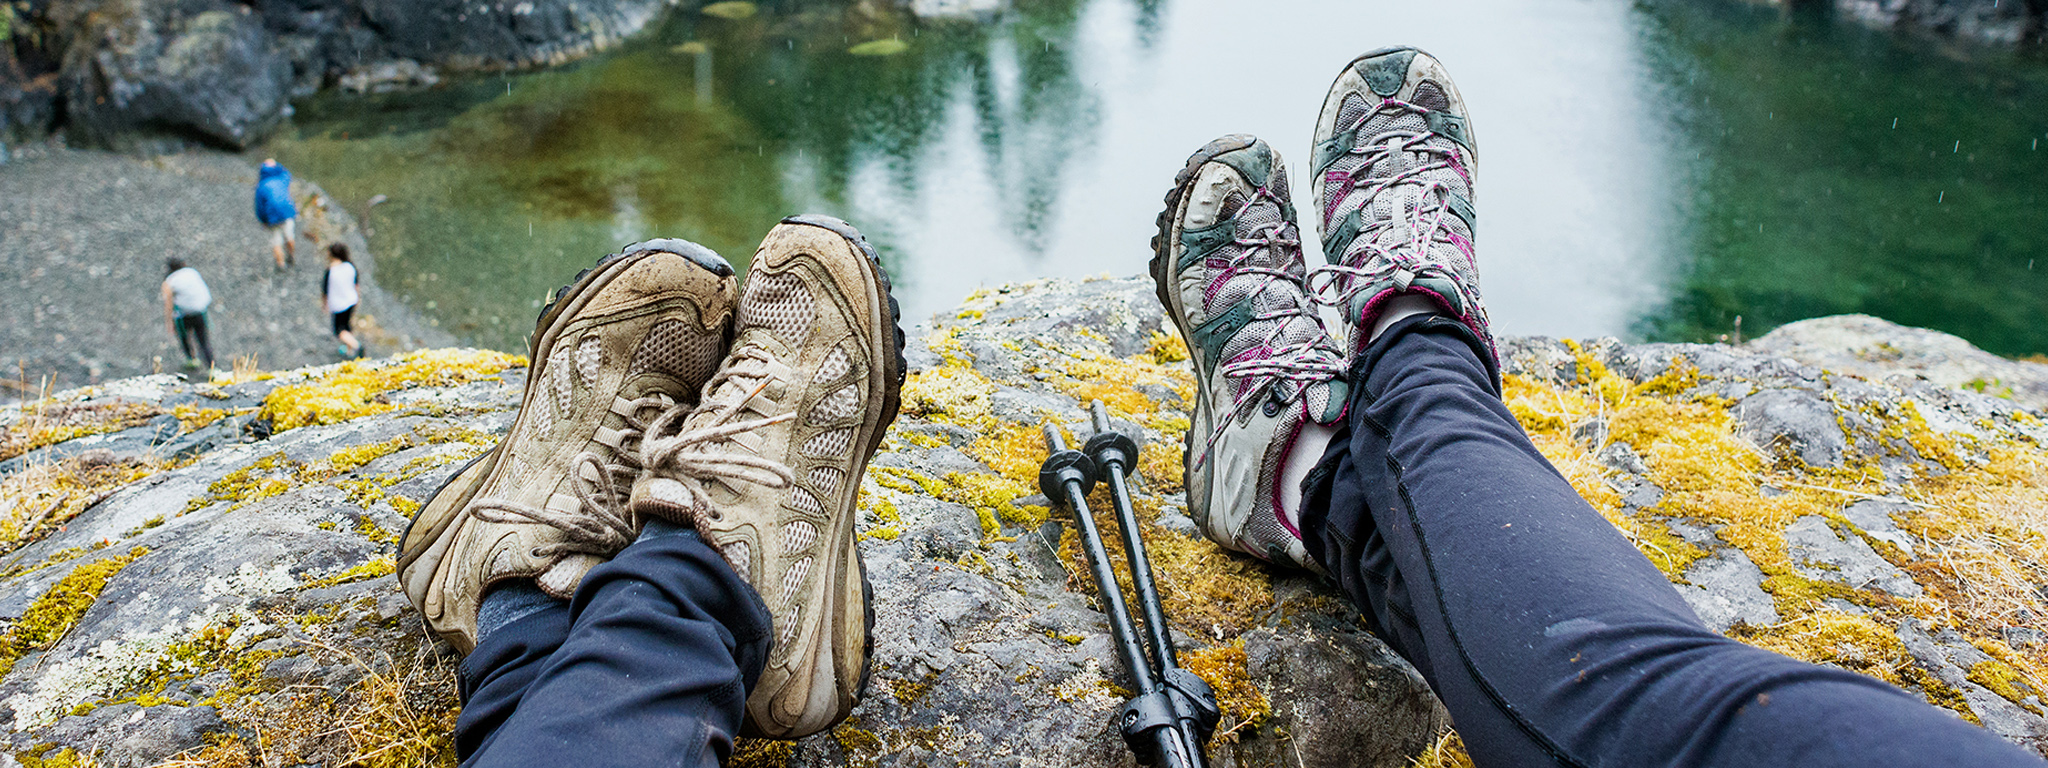 Los pies de dos personas cuelgan sobre el borde de una roca con vistas a un lago.